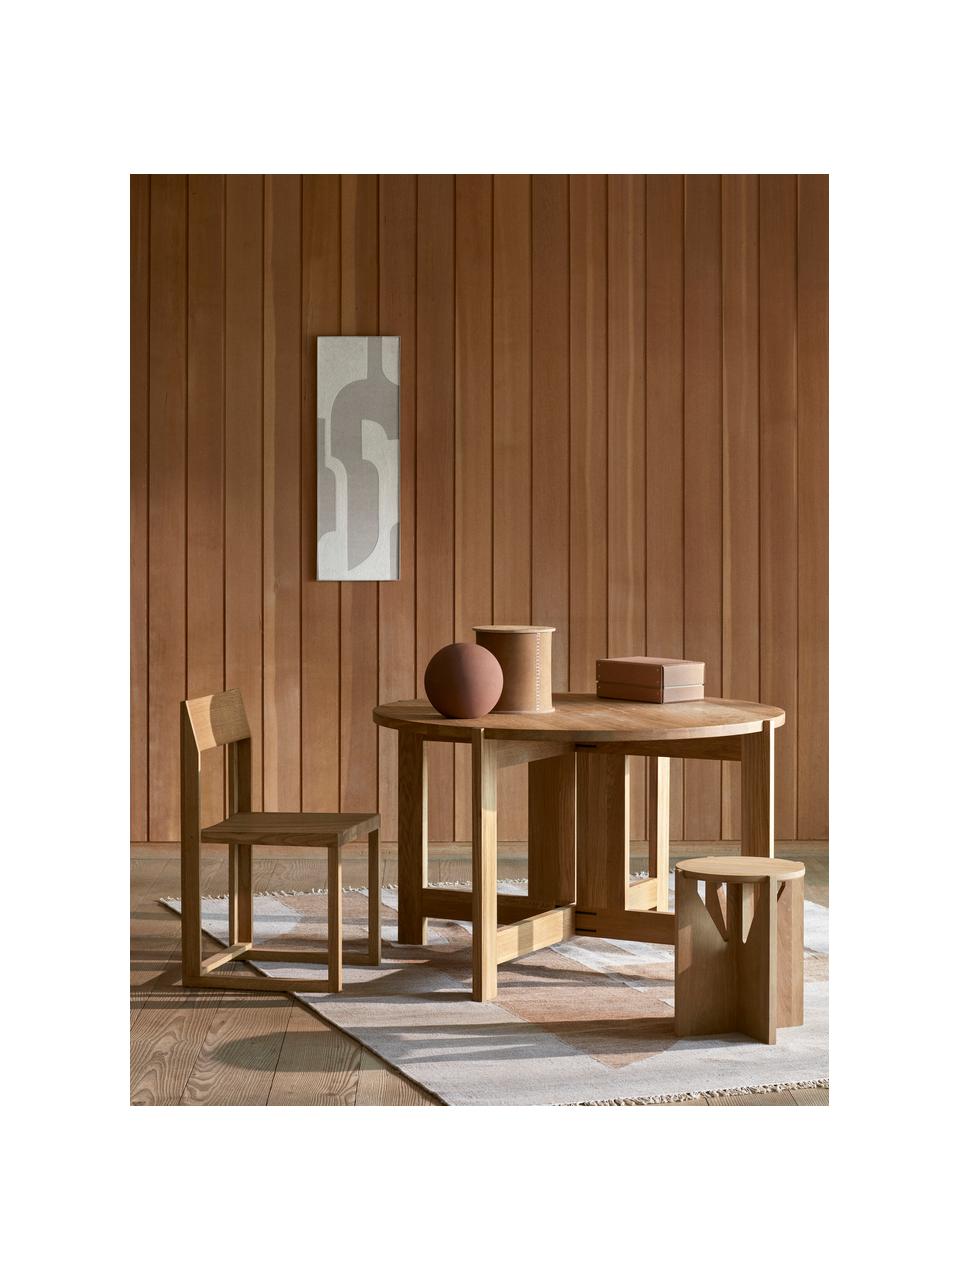 Dřevěná židle z dubového dřeva Outline, Olejované dubové dřevo, certifikace FSC, Dubové dřevo, Š 46 cm, H 46 cm